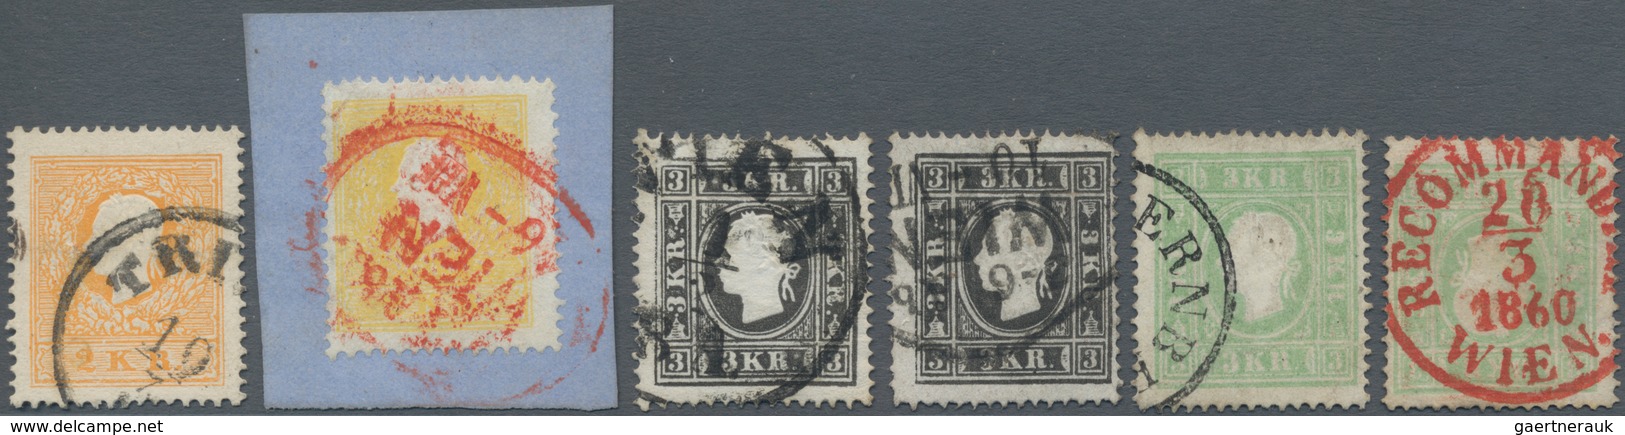 Österreich: 1858/1859, Sechs Werte In Type II Dabei 2 Kr. Gelb (Bfstk. Mit Rotstpl.) Und Orange Sowi - Used Stamps